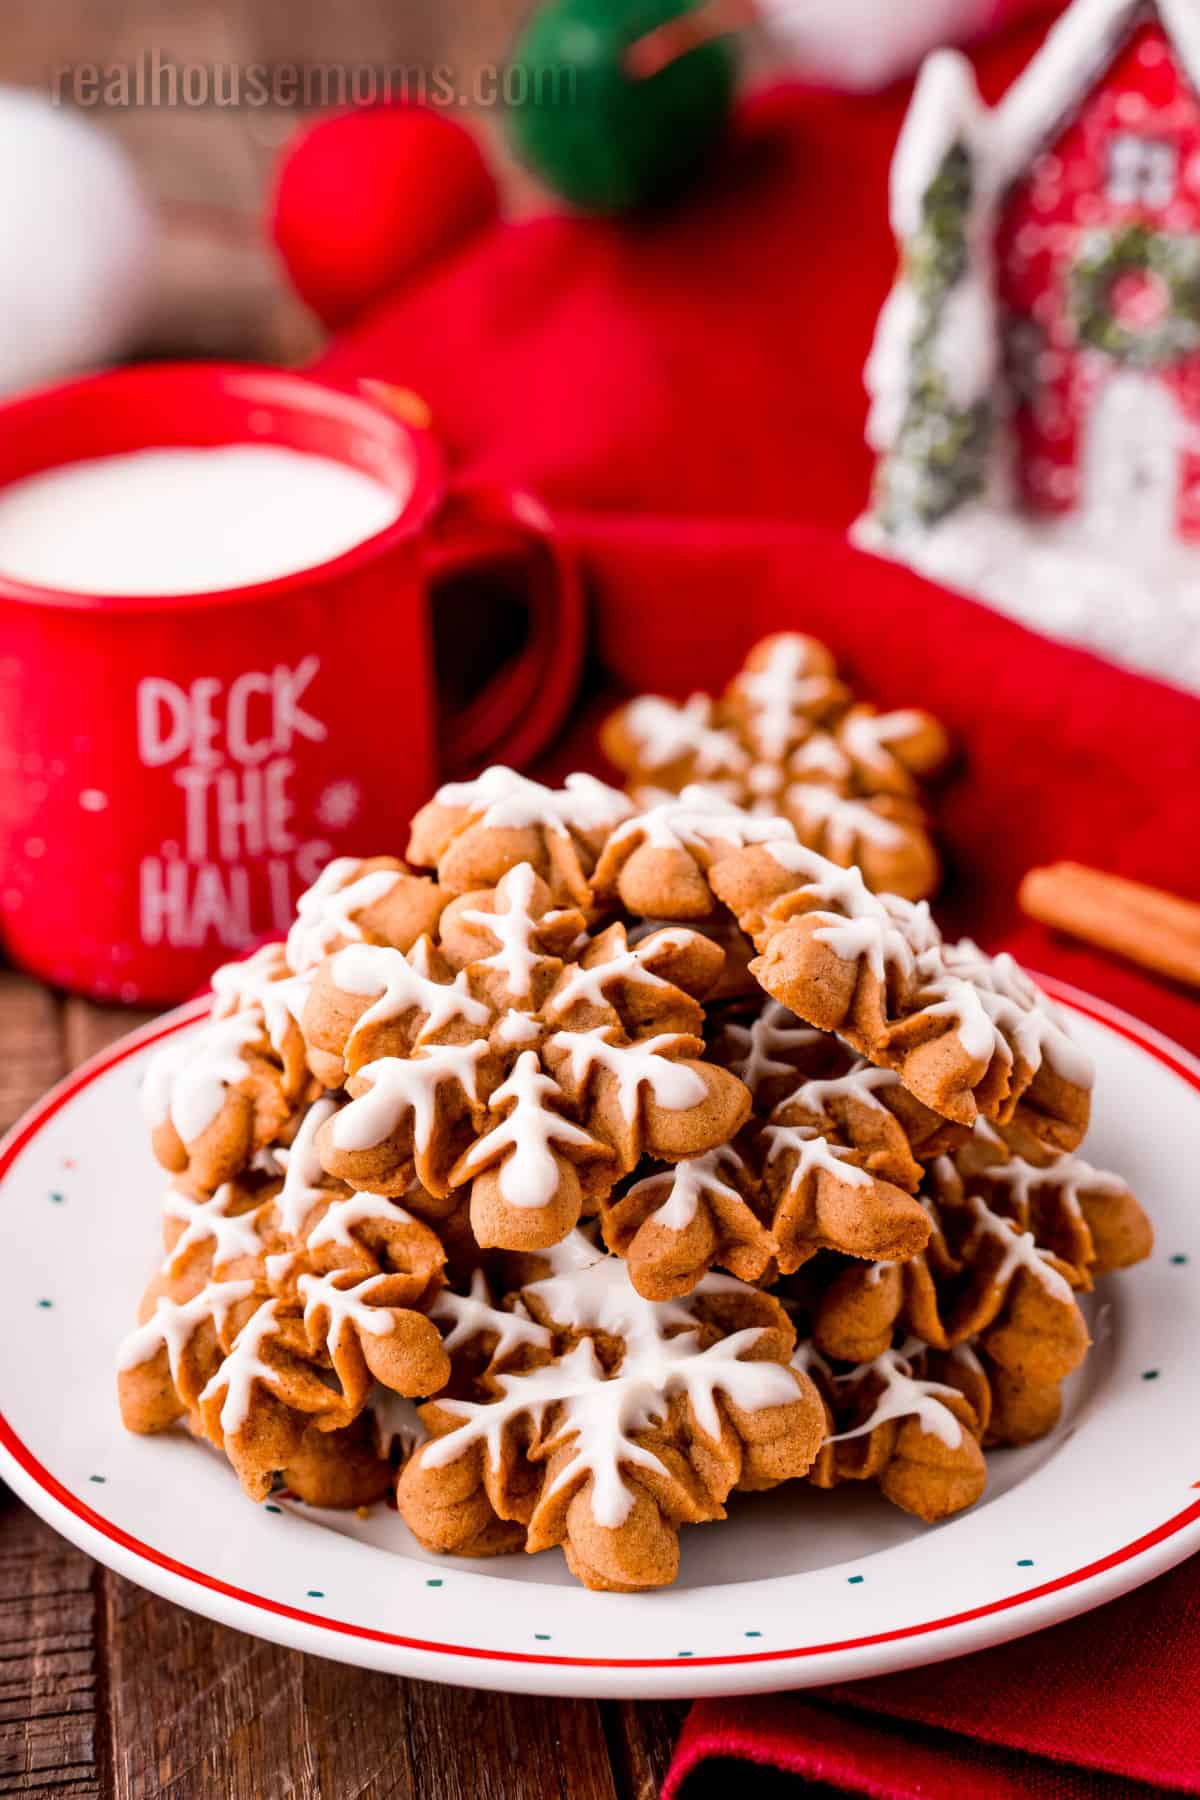 https://realhousemoms.com/wp-content/uploads/Gingerbread-Spritz-Cookies-IC-6.jpg